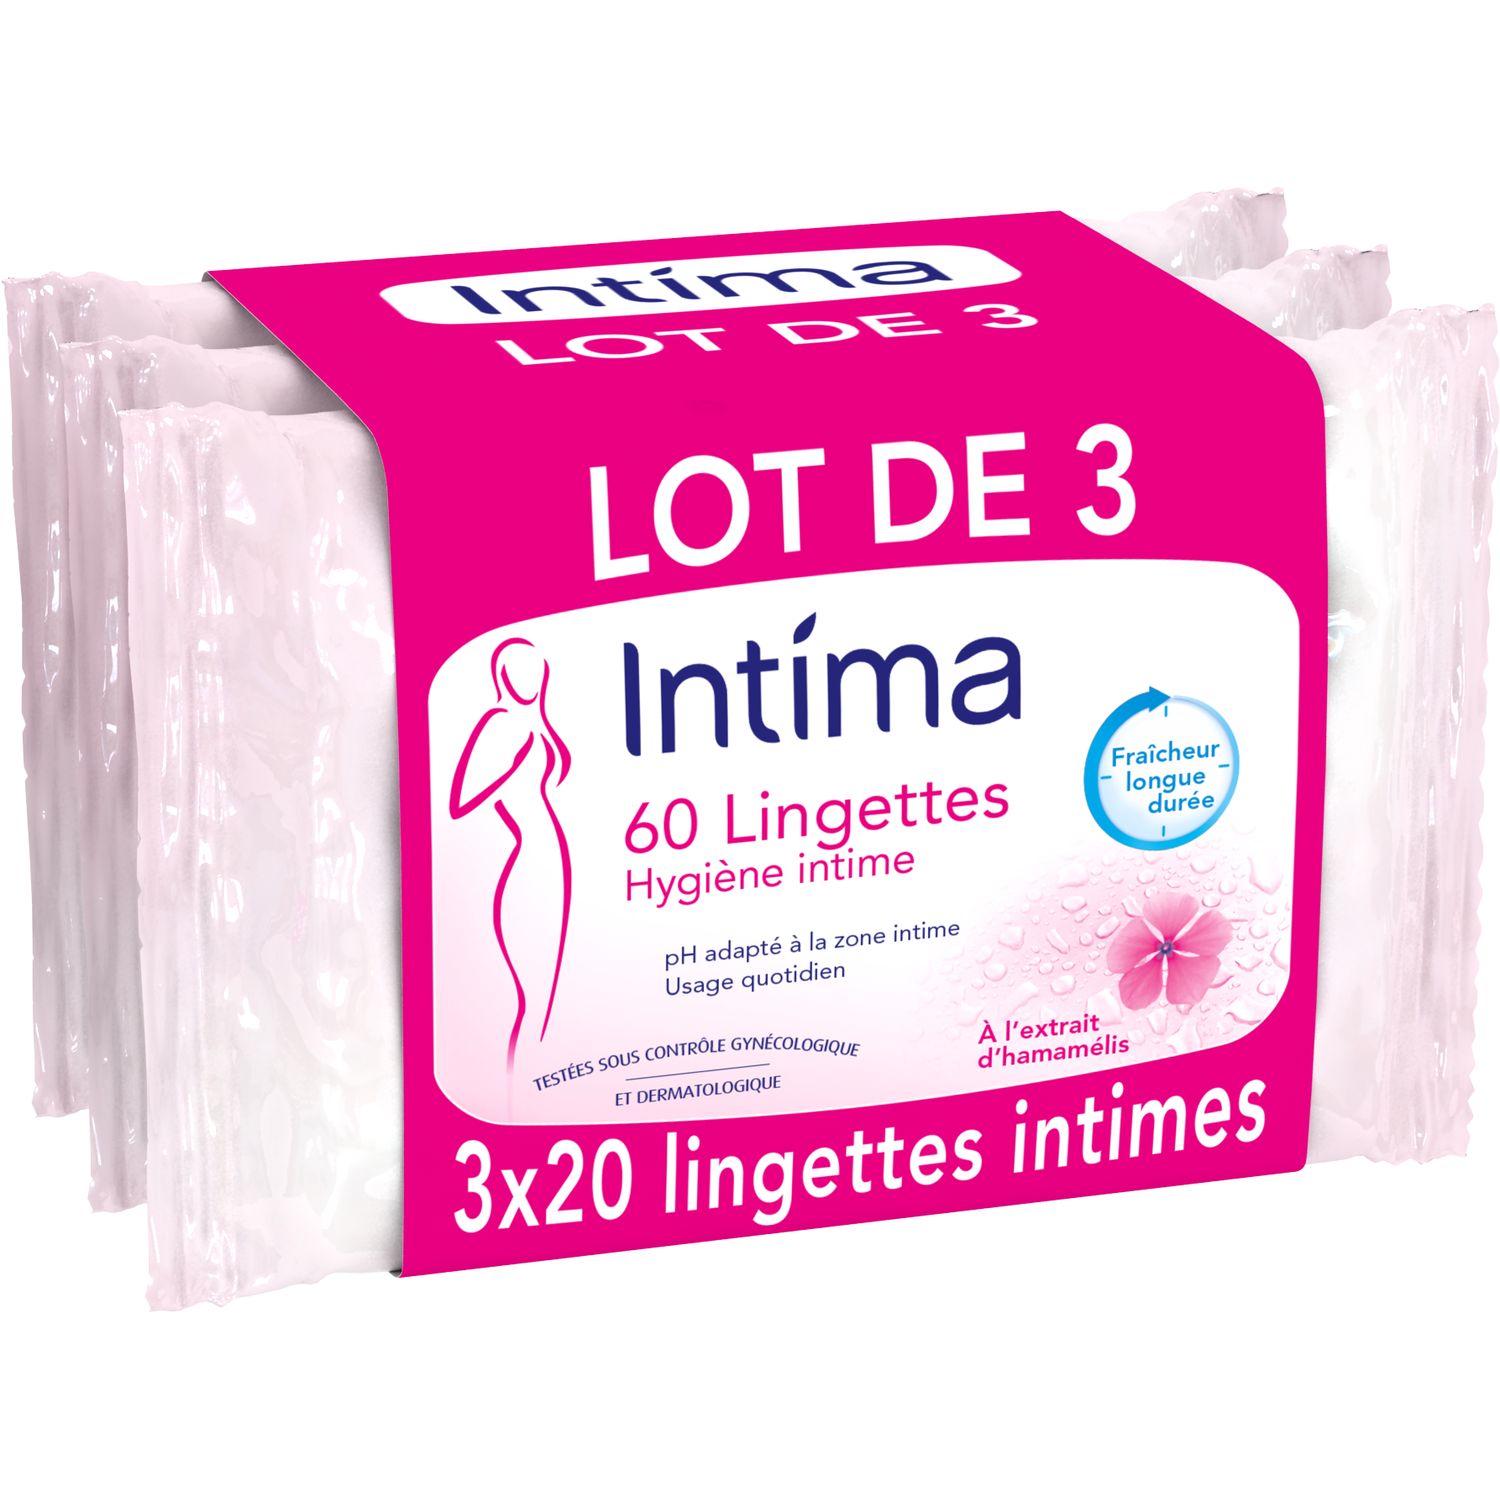 INTIMA Lingettes hygiène intime 3x20 lingettes pas cher 